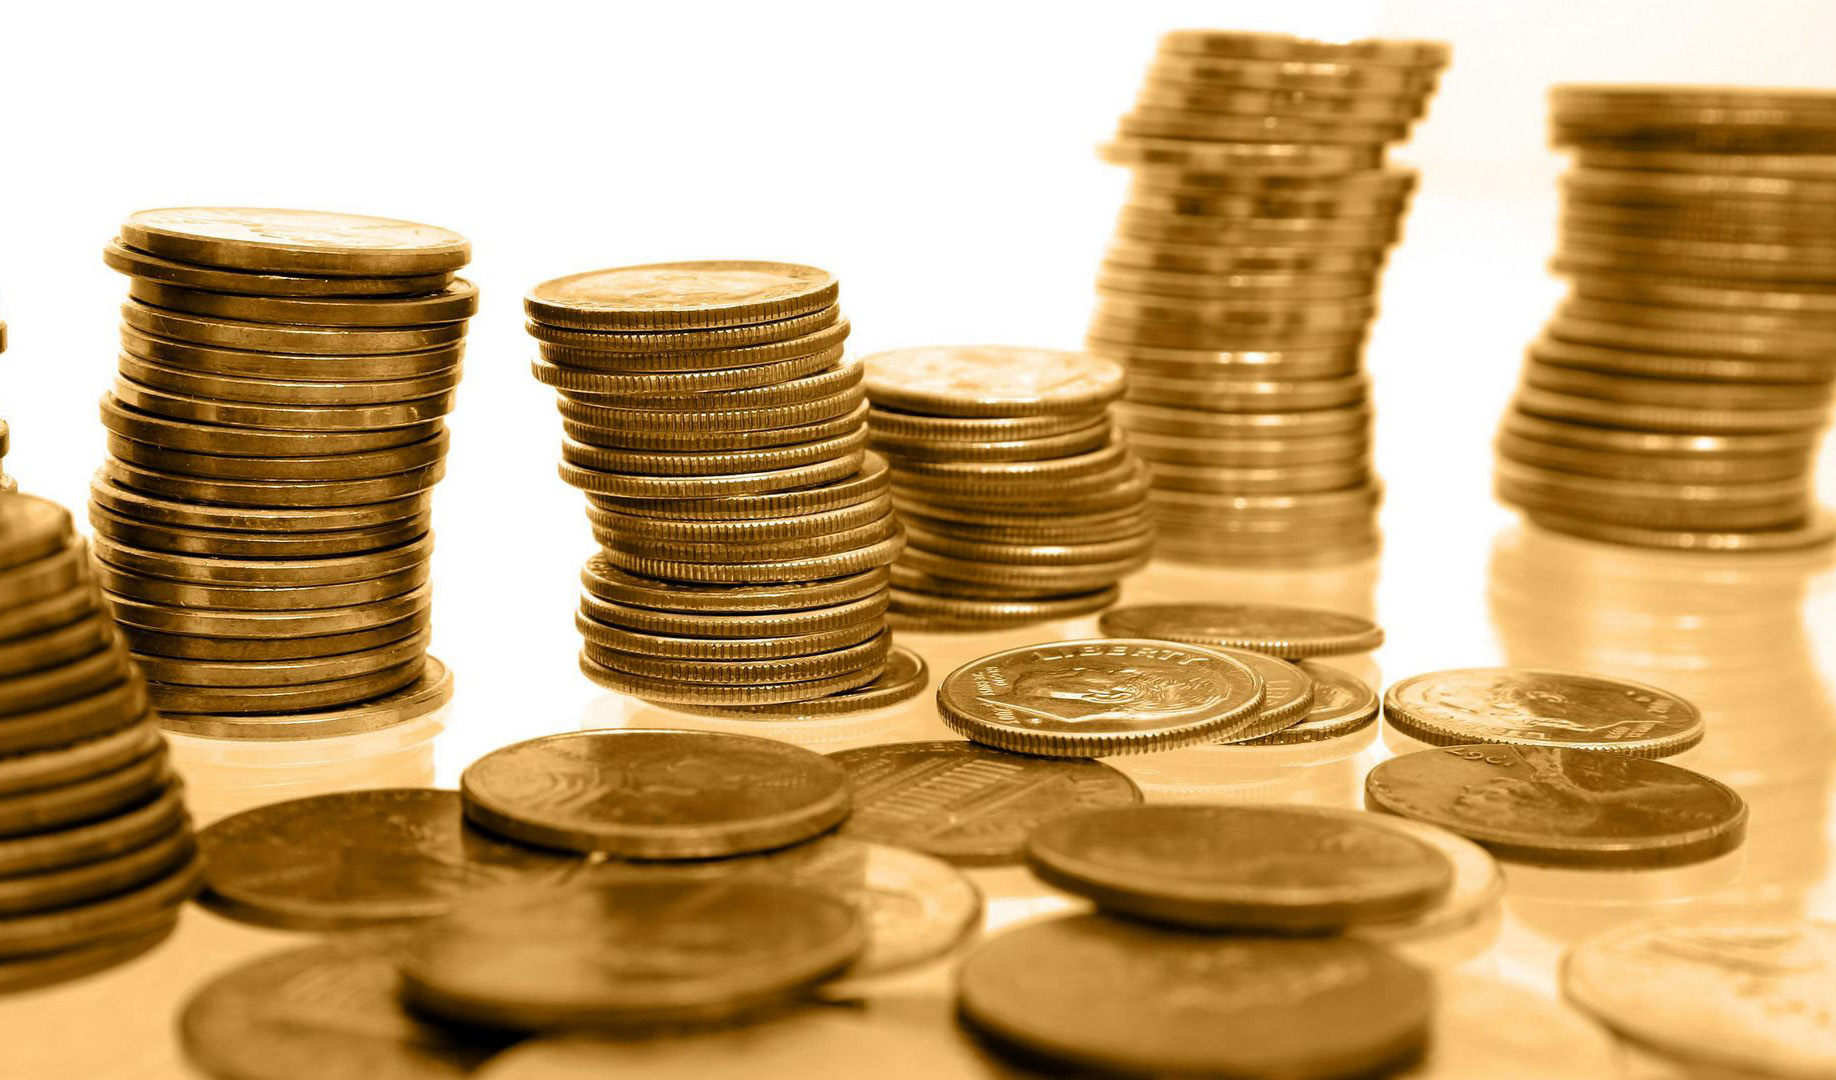 ریزش قیمت سکه و طلا/ نرخ سکه نسبت به صبح ۲ میلیون تومان کاهش یافت